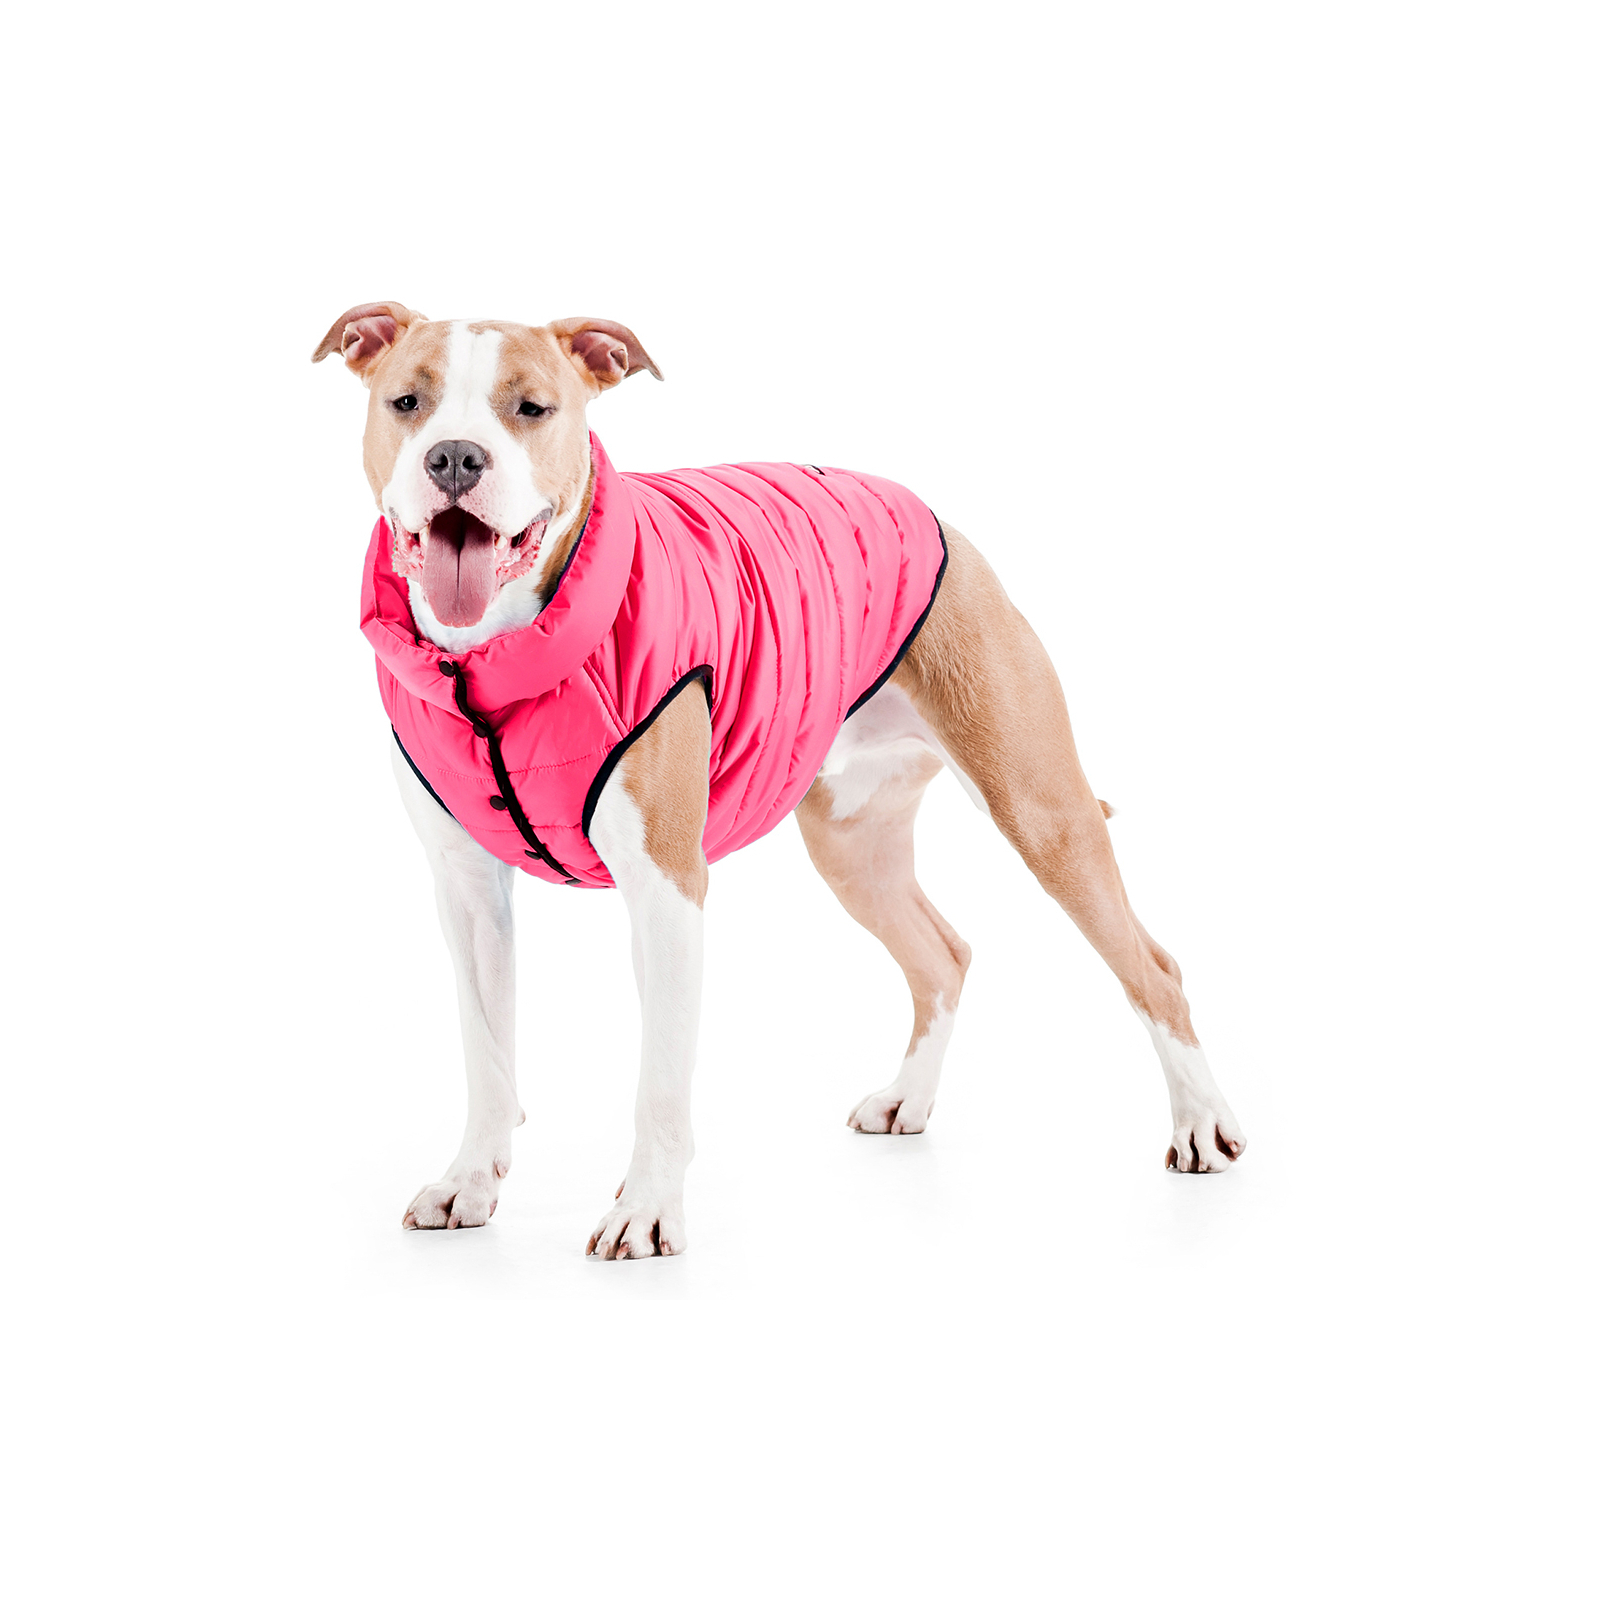 Курточка для животных Airy Vest One S 40 розовая (20667) изображение 3